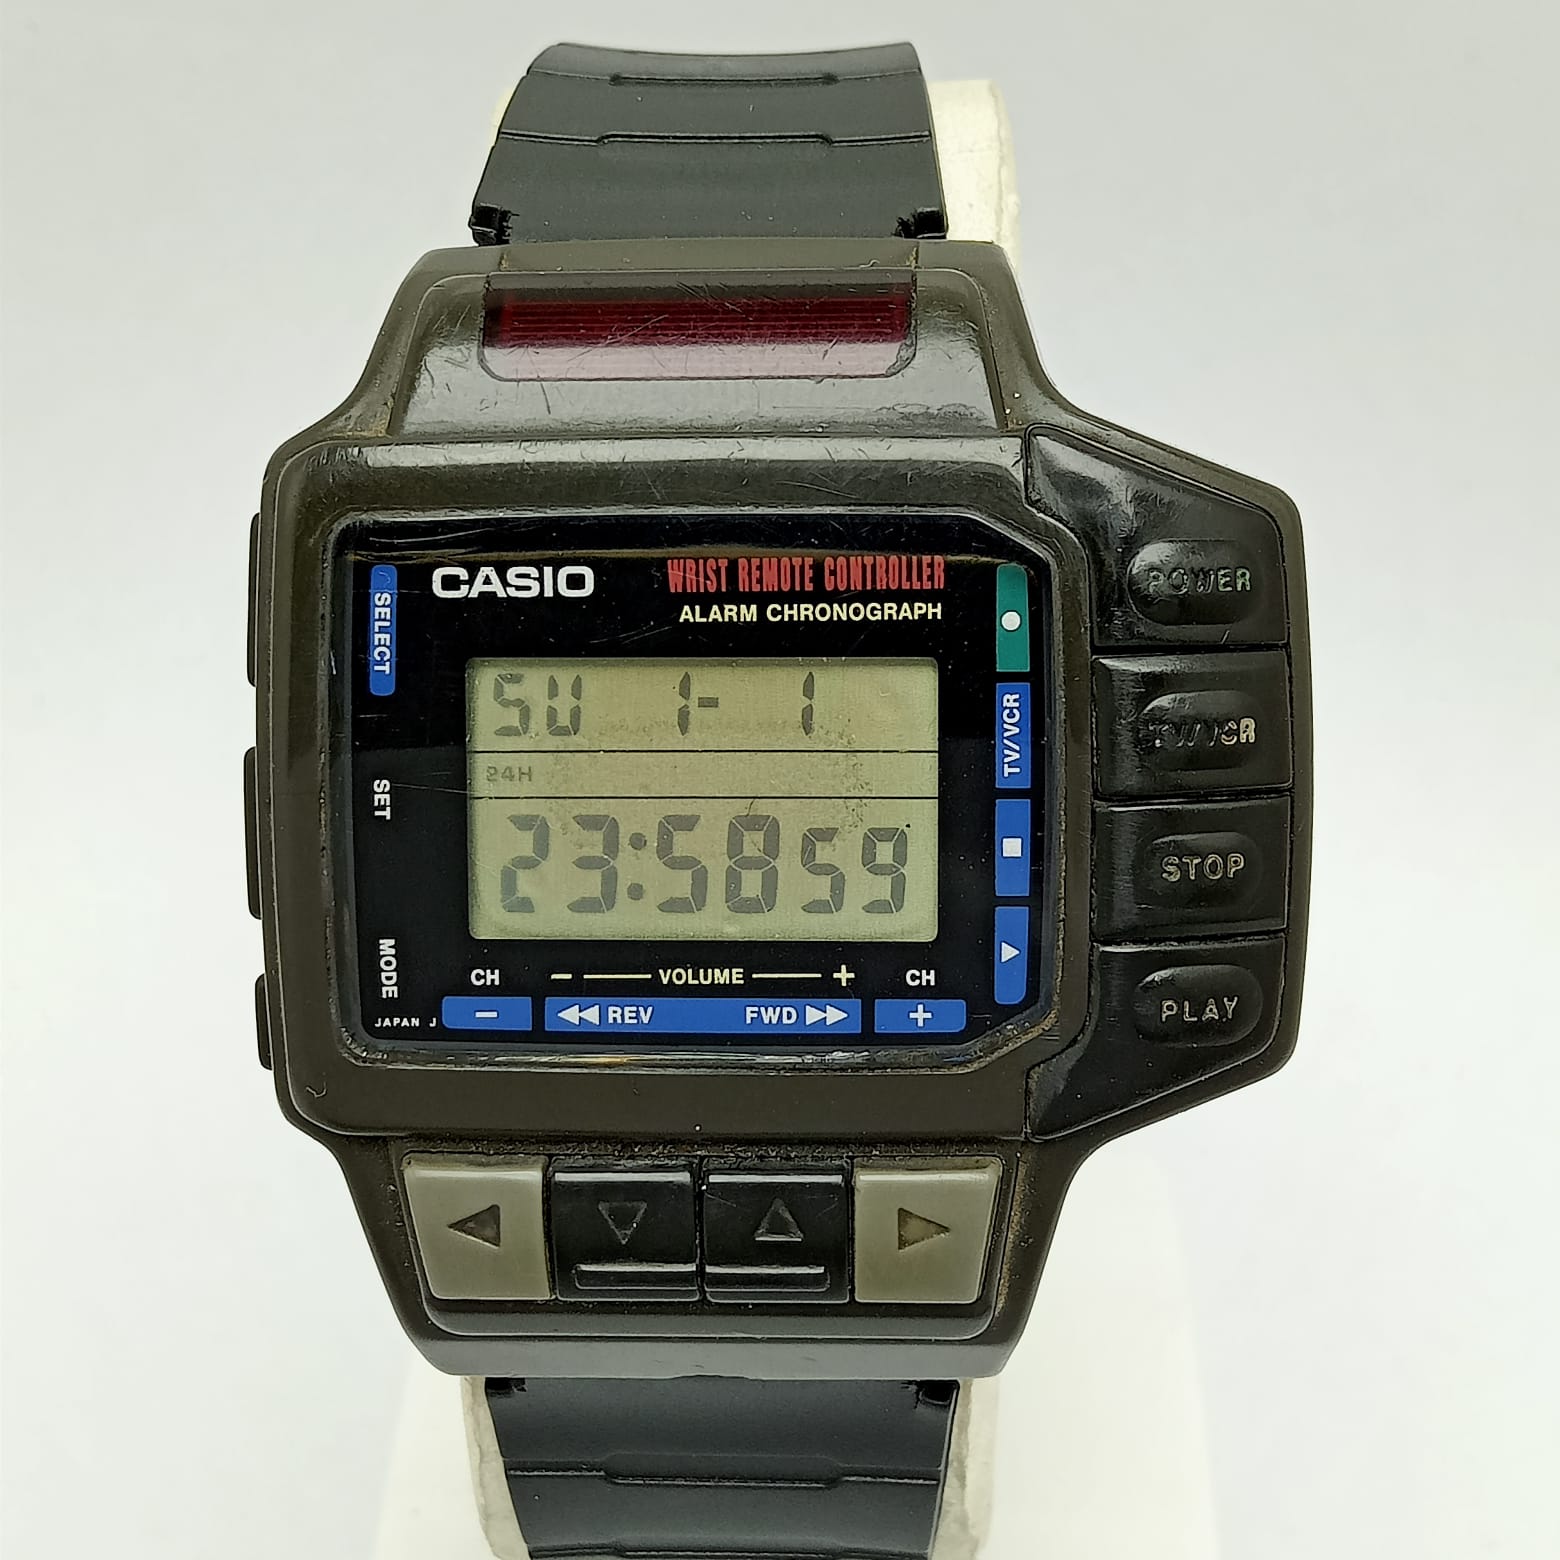 Casio Quartz 1028 CMD-10 Wrist Remote Controller Vintage Men’s Watch (1)